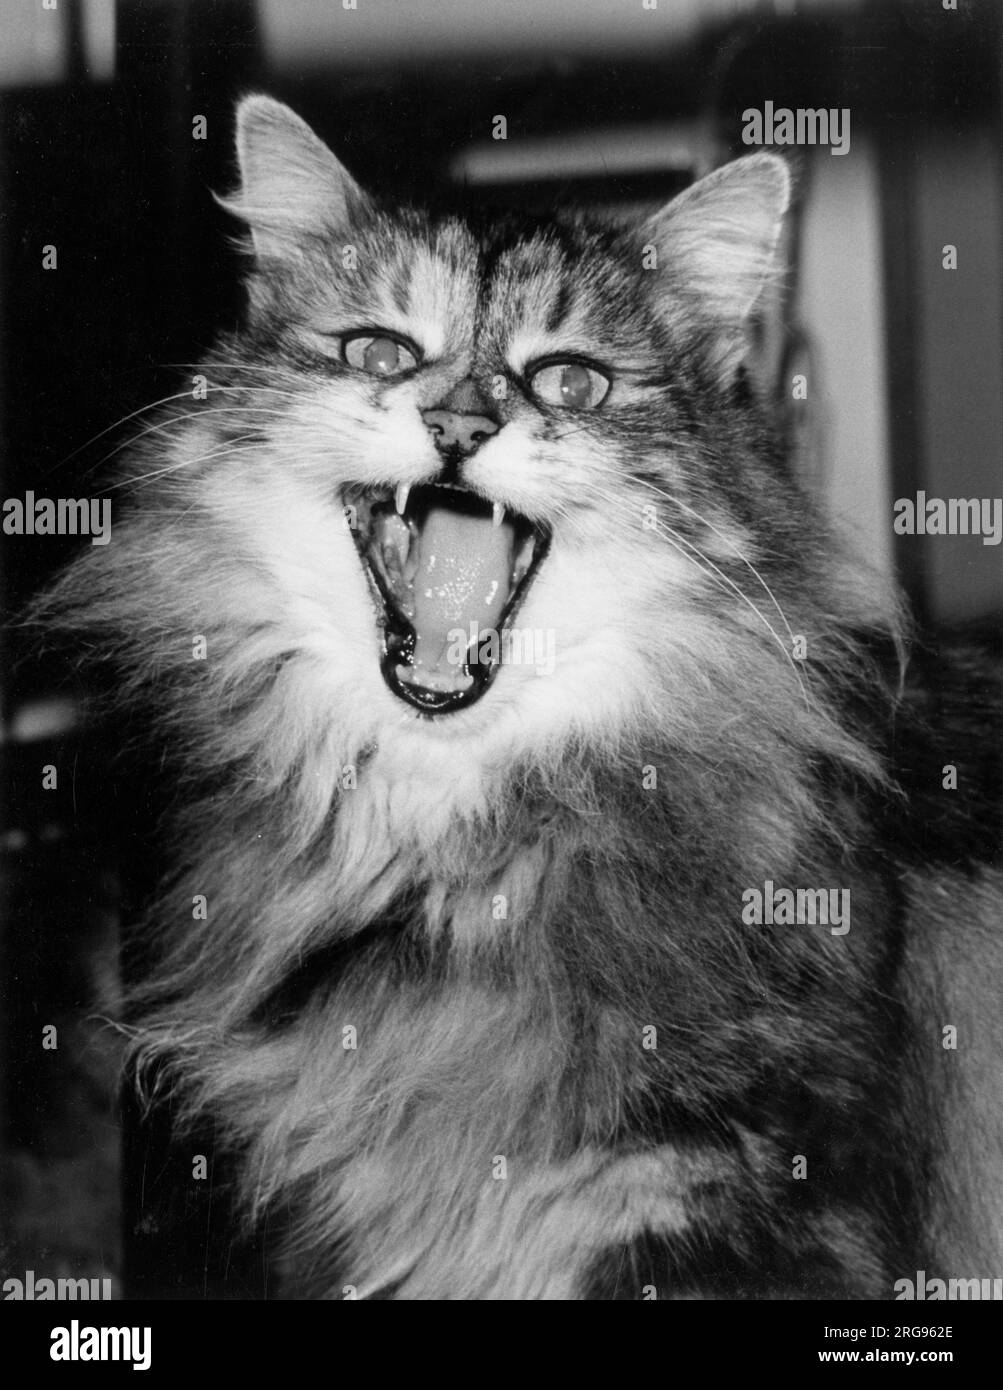 Die langhaarige Tabby-Katze sieht mit offenem Mund wild aus. Stockfoto